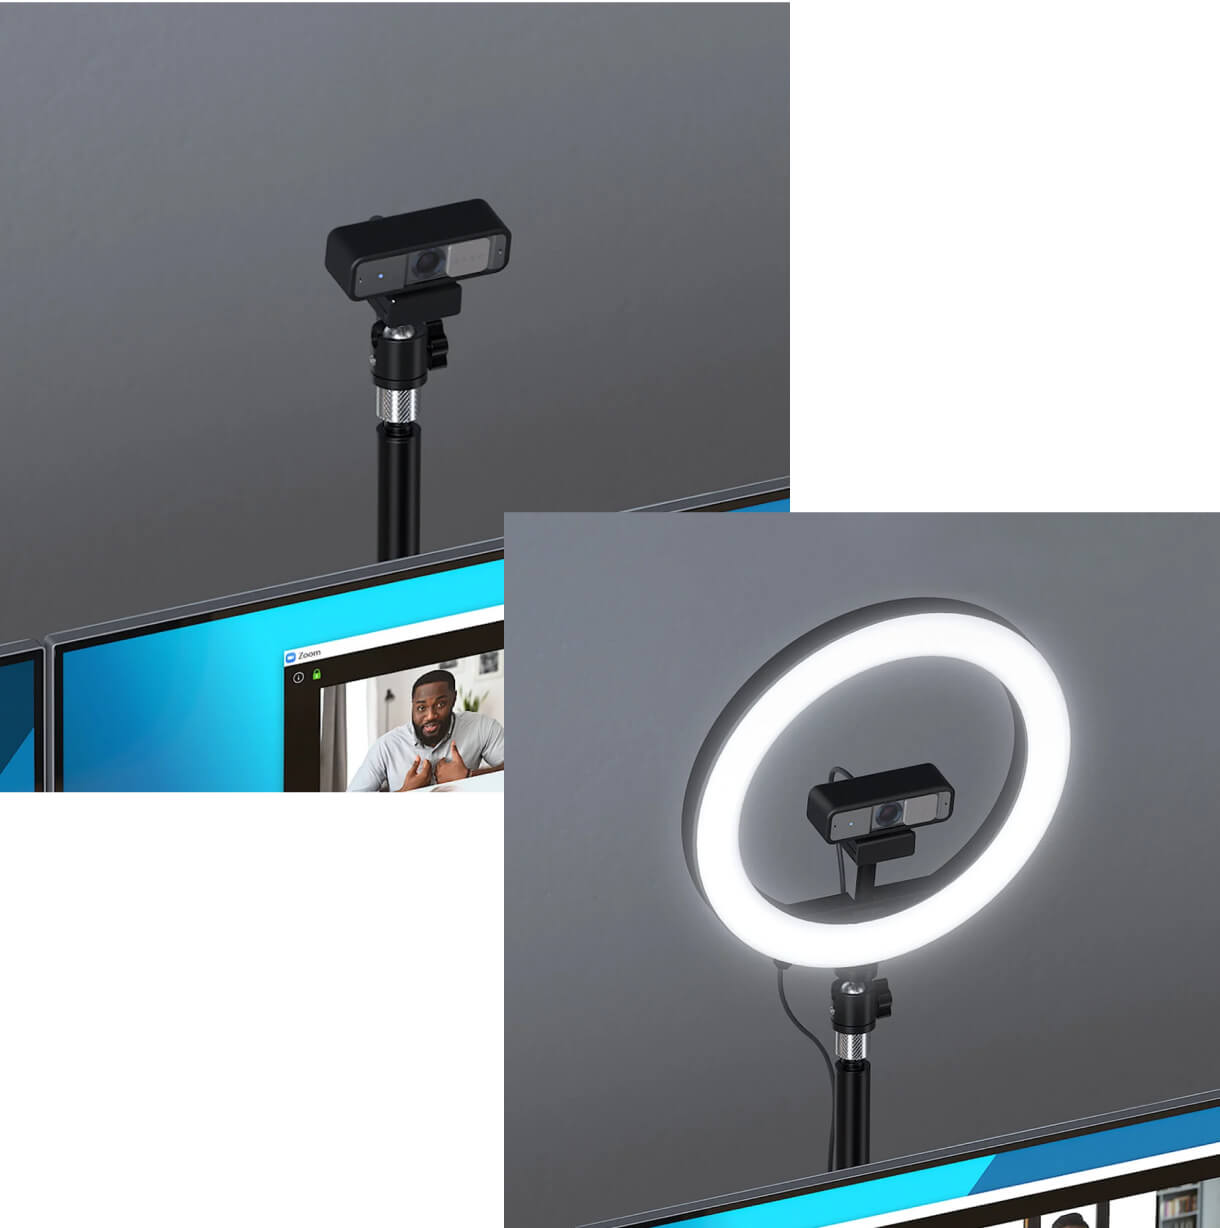 Aménagement professionnel de bureau avec webcaméra Kensington W2050 Pro de 1080p à mise au point automatique, anneau lumineux à deux couleurs L1000 avec support pour webcaméra, serre-joint en C télescopique A1000, commutateur universel professionnel 3 en 1 pour casque audio
                            